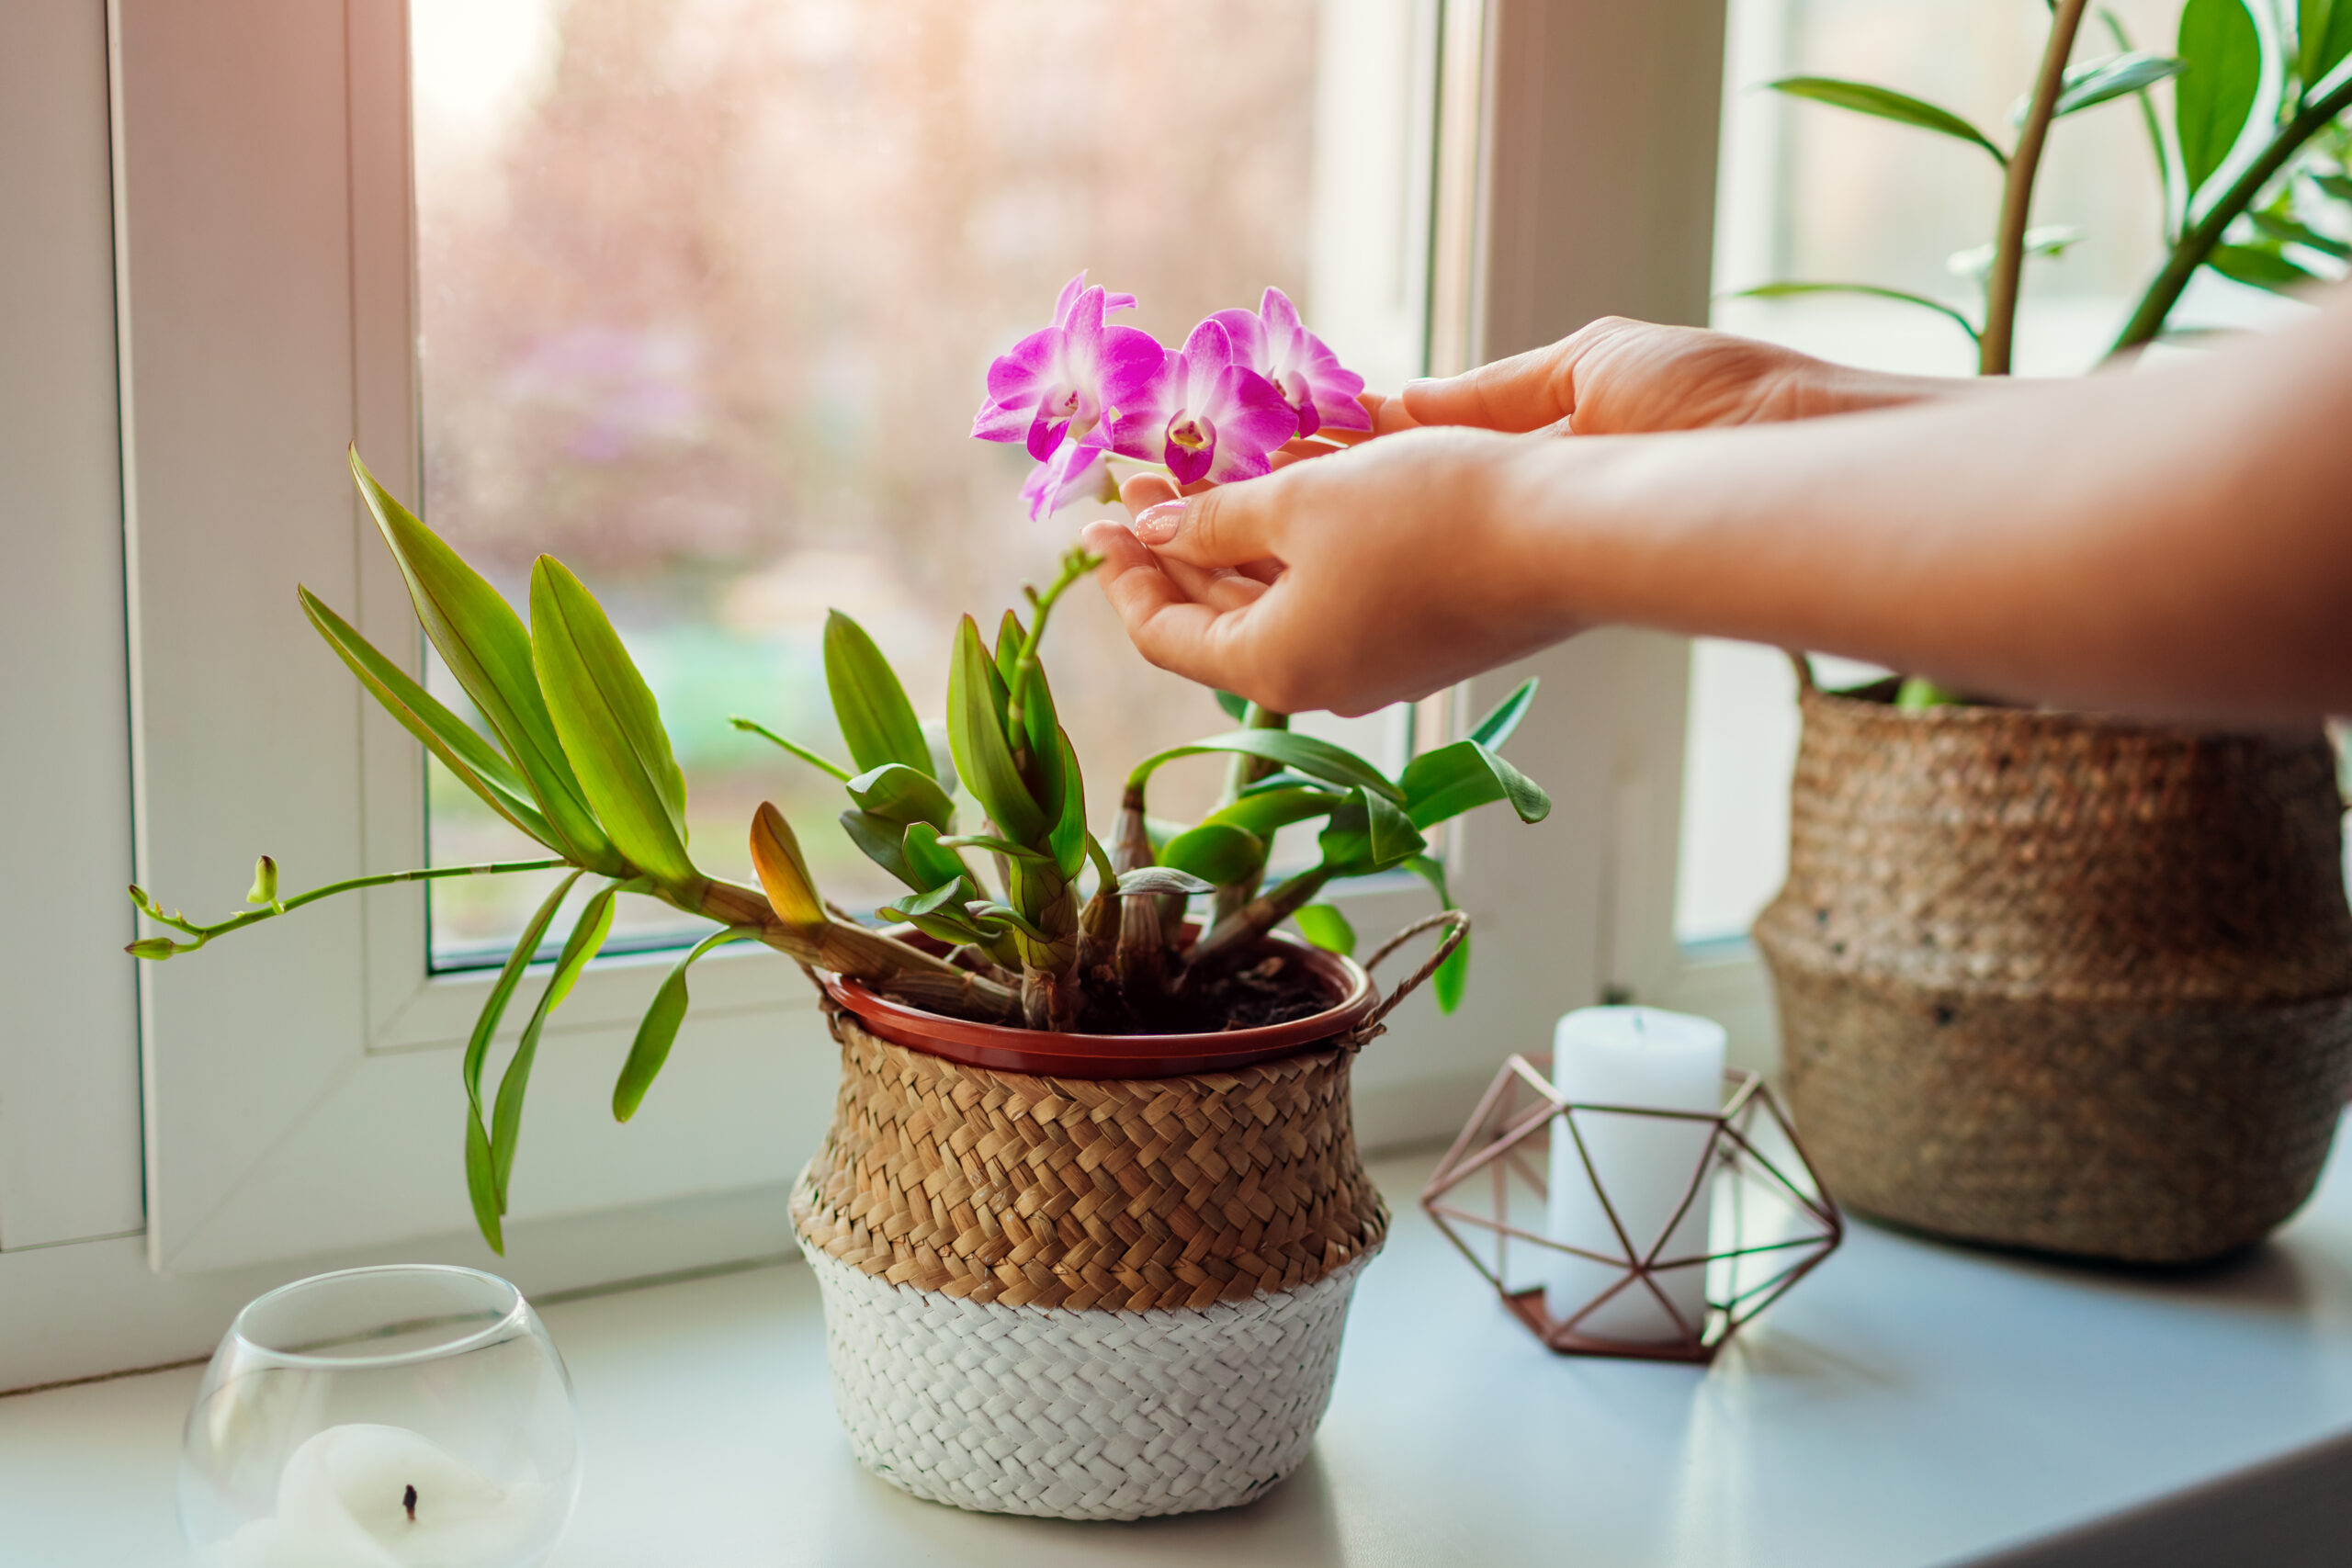 Mani che curano un'orchidea in vaso.